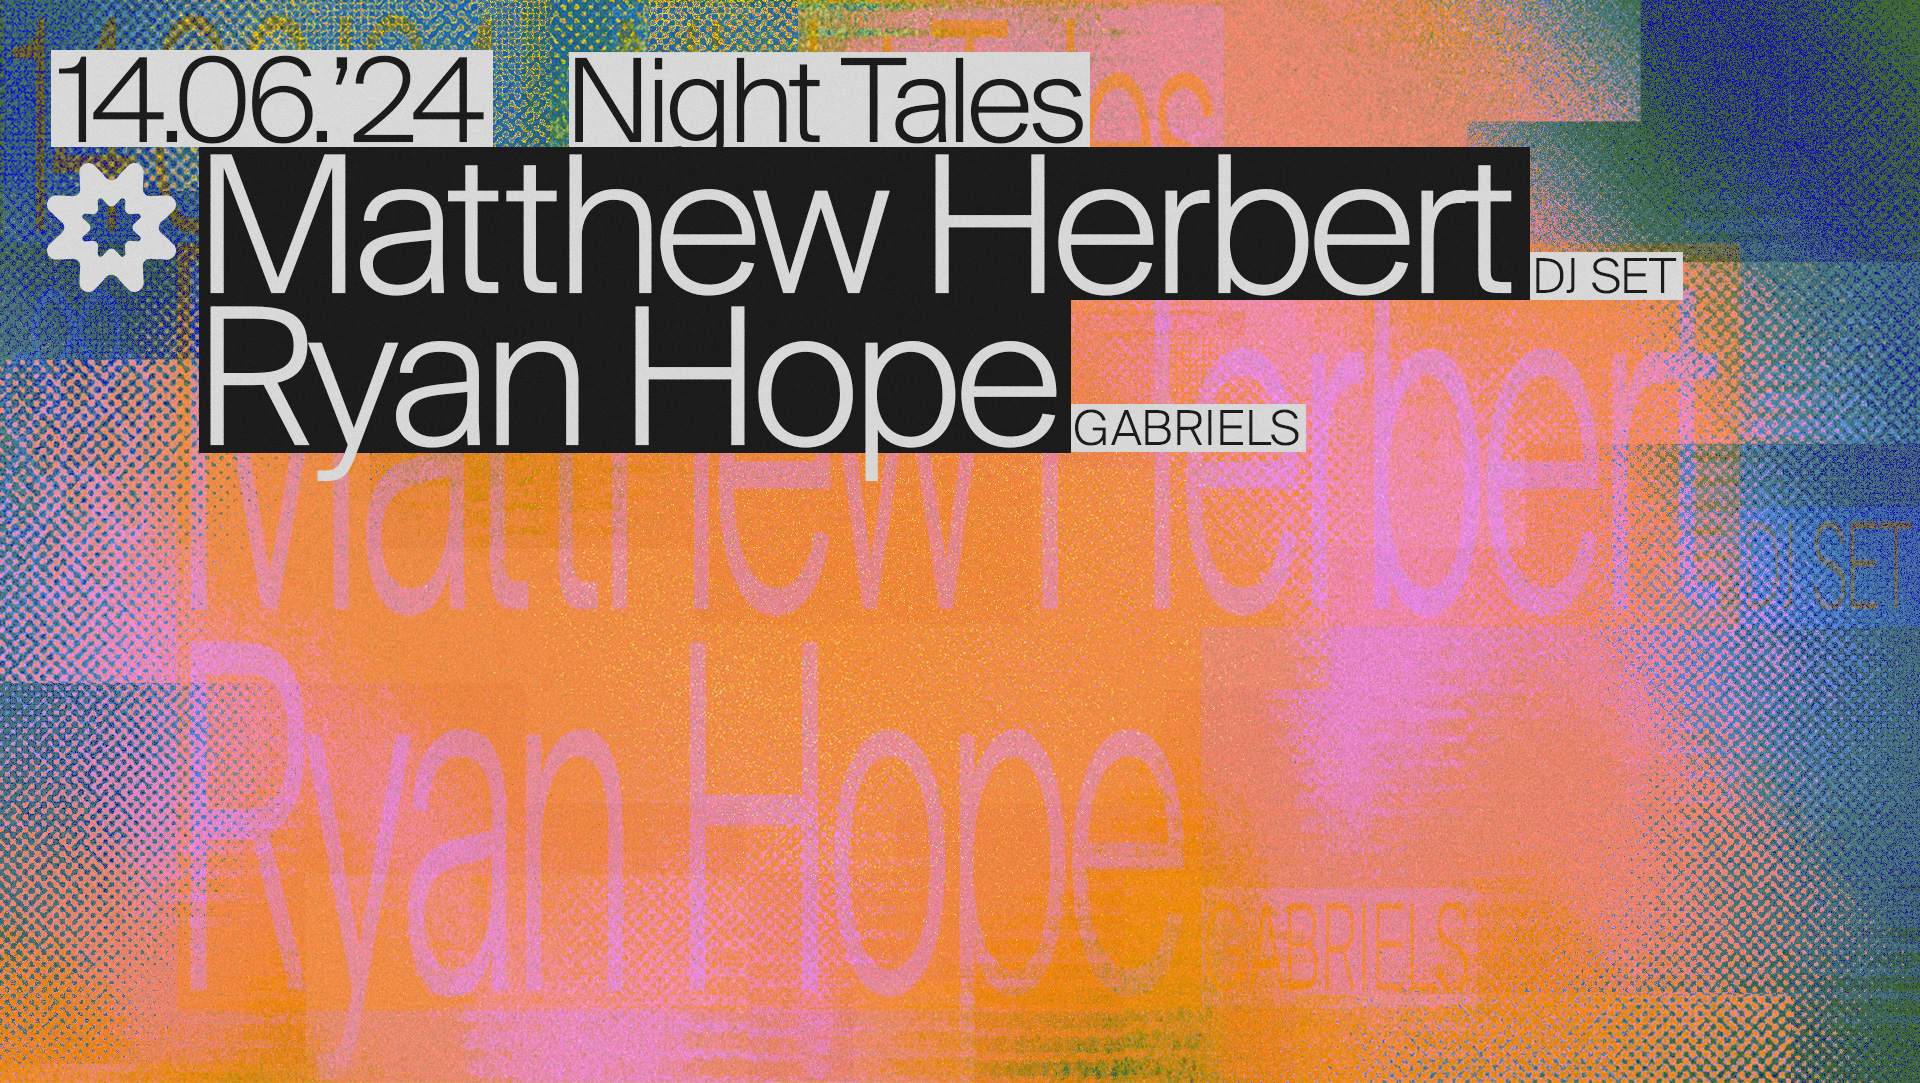 Night Tales: Matthew Herbert [DJ Set] & Ryan Hope (Gabriels) [DJ Set] - フライヤー表